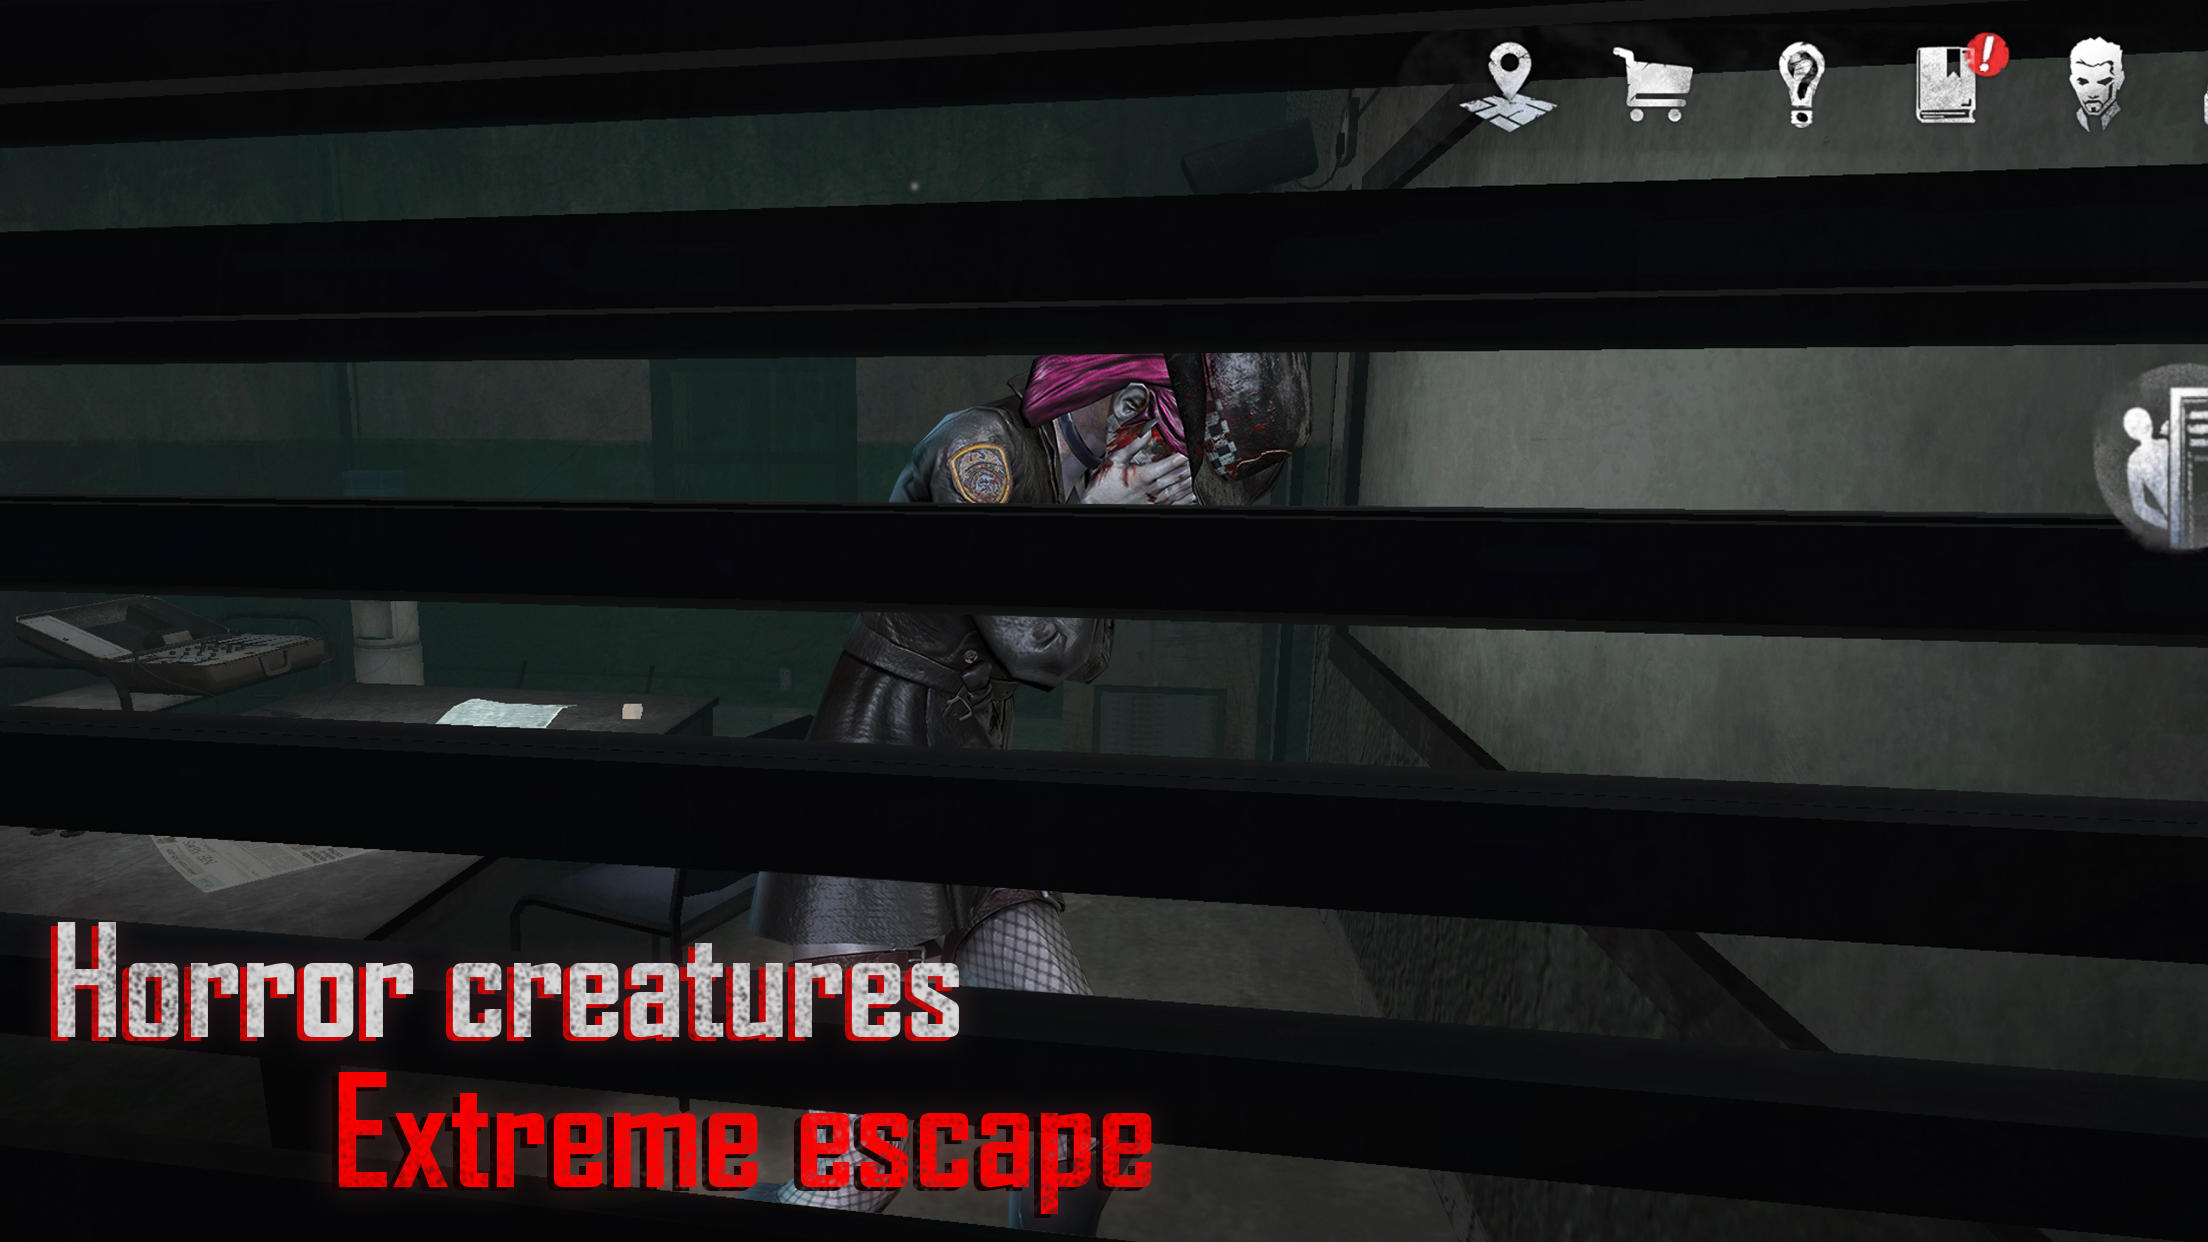 Escape game:prison adventure 3 31 Free Download